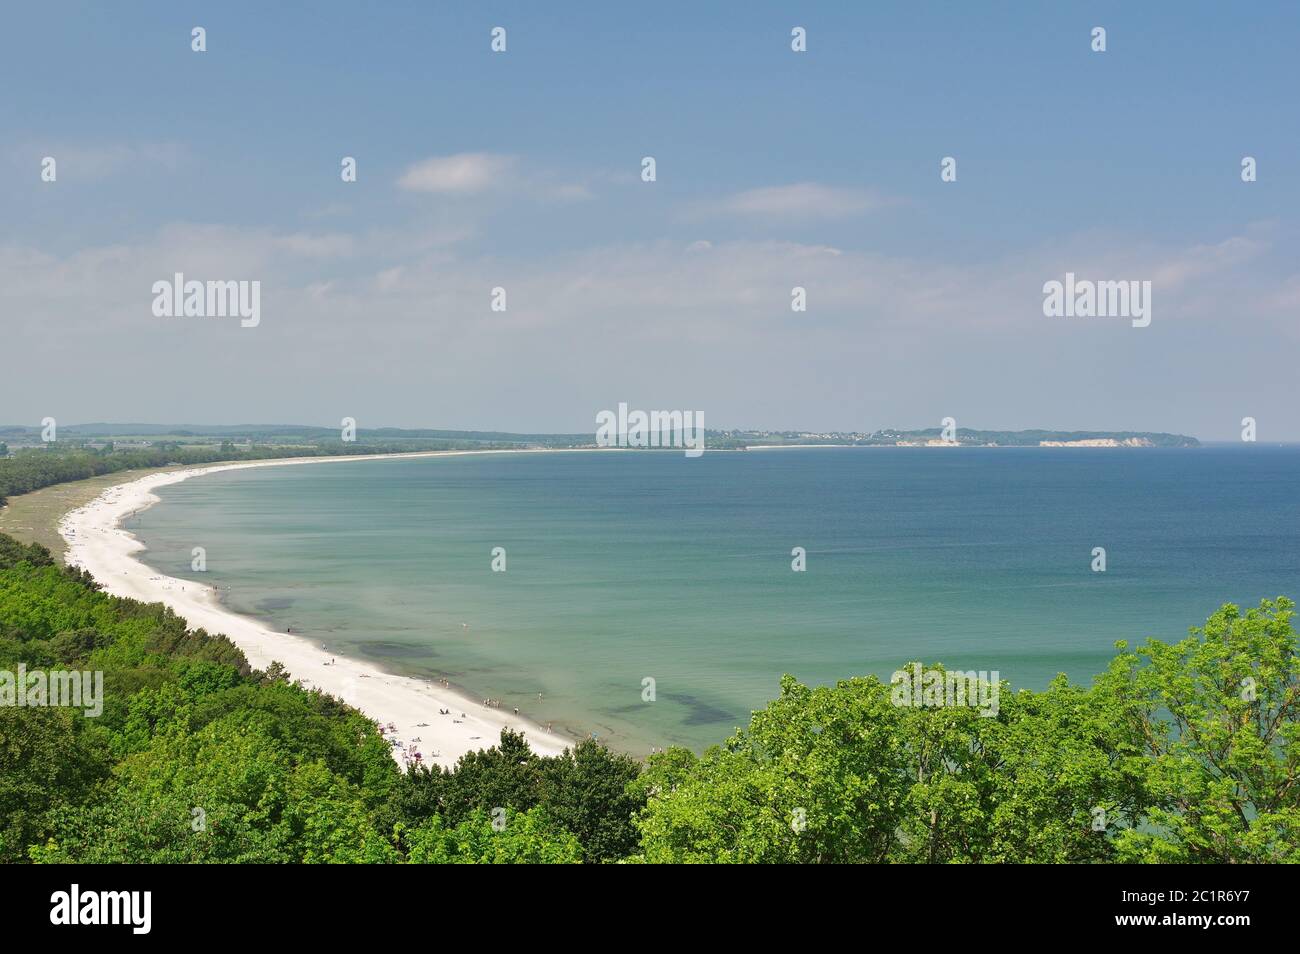 Sulla spiaggia sabbiosa di Thiessow, sull'orione: La linea rocciosa di GÃ¶hren, Isola RÃ¼gen, MÃ¶nchgut, Germania, Europa occidentale Foto Stock